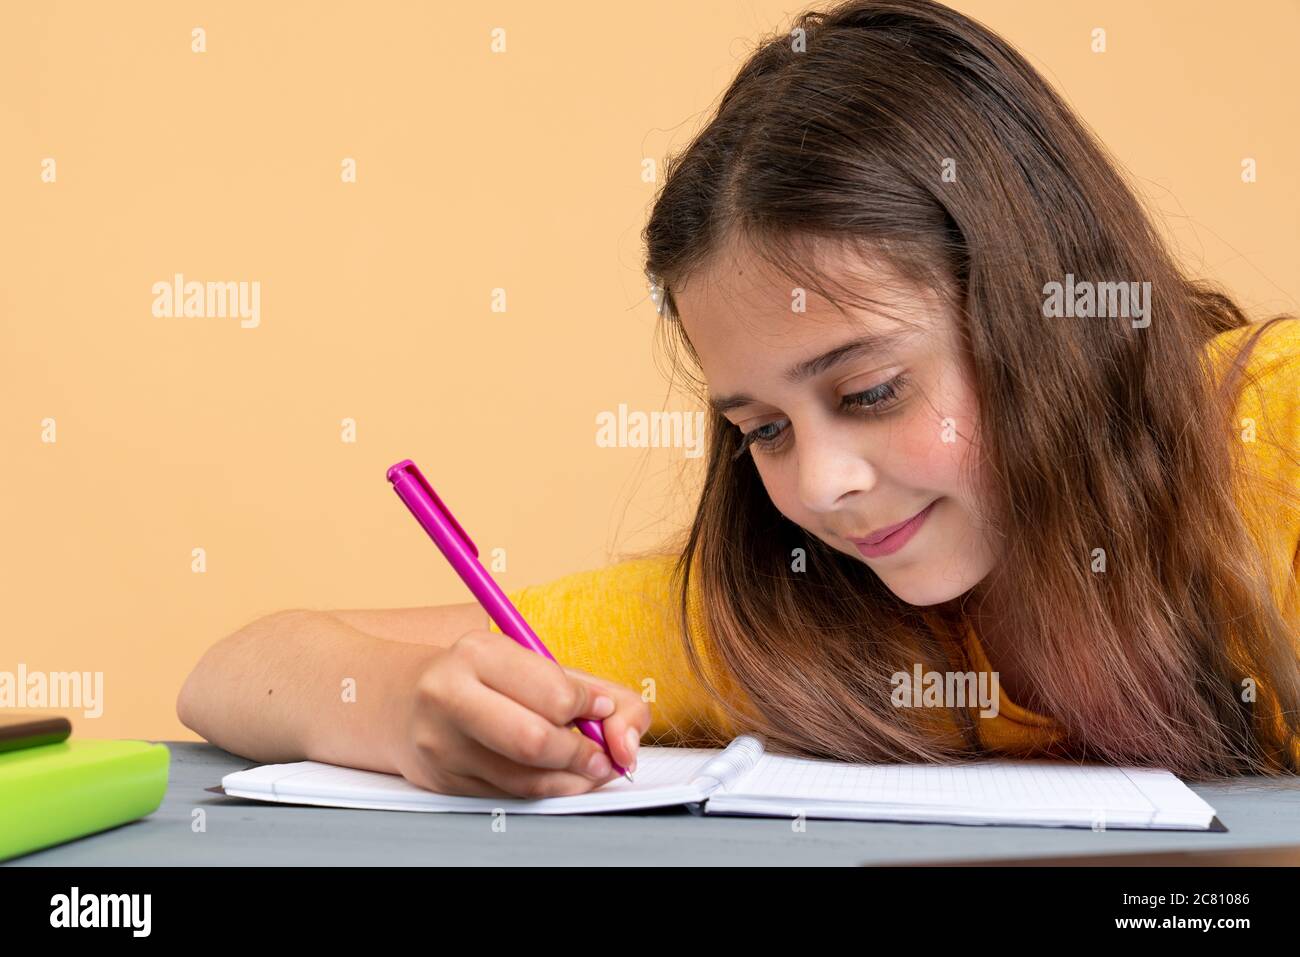 Une jeune fille scolaire européenne concentrée étudiant avec des livres se préparant à l'examen de test rédaction essai faire ses devoirs à la maison, l'enseignement étudiant d'adolescence Banque D'Images